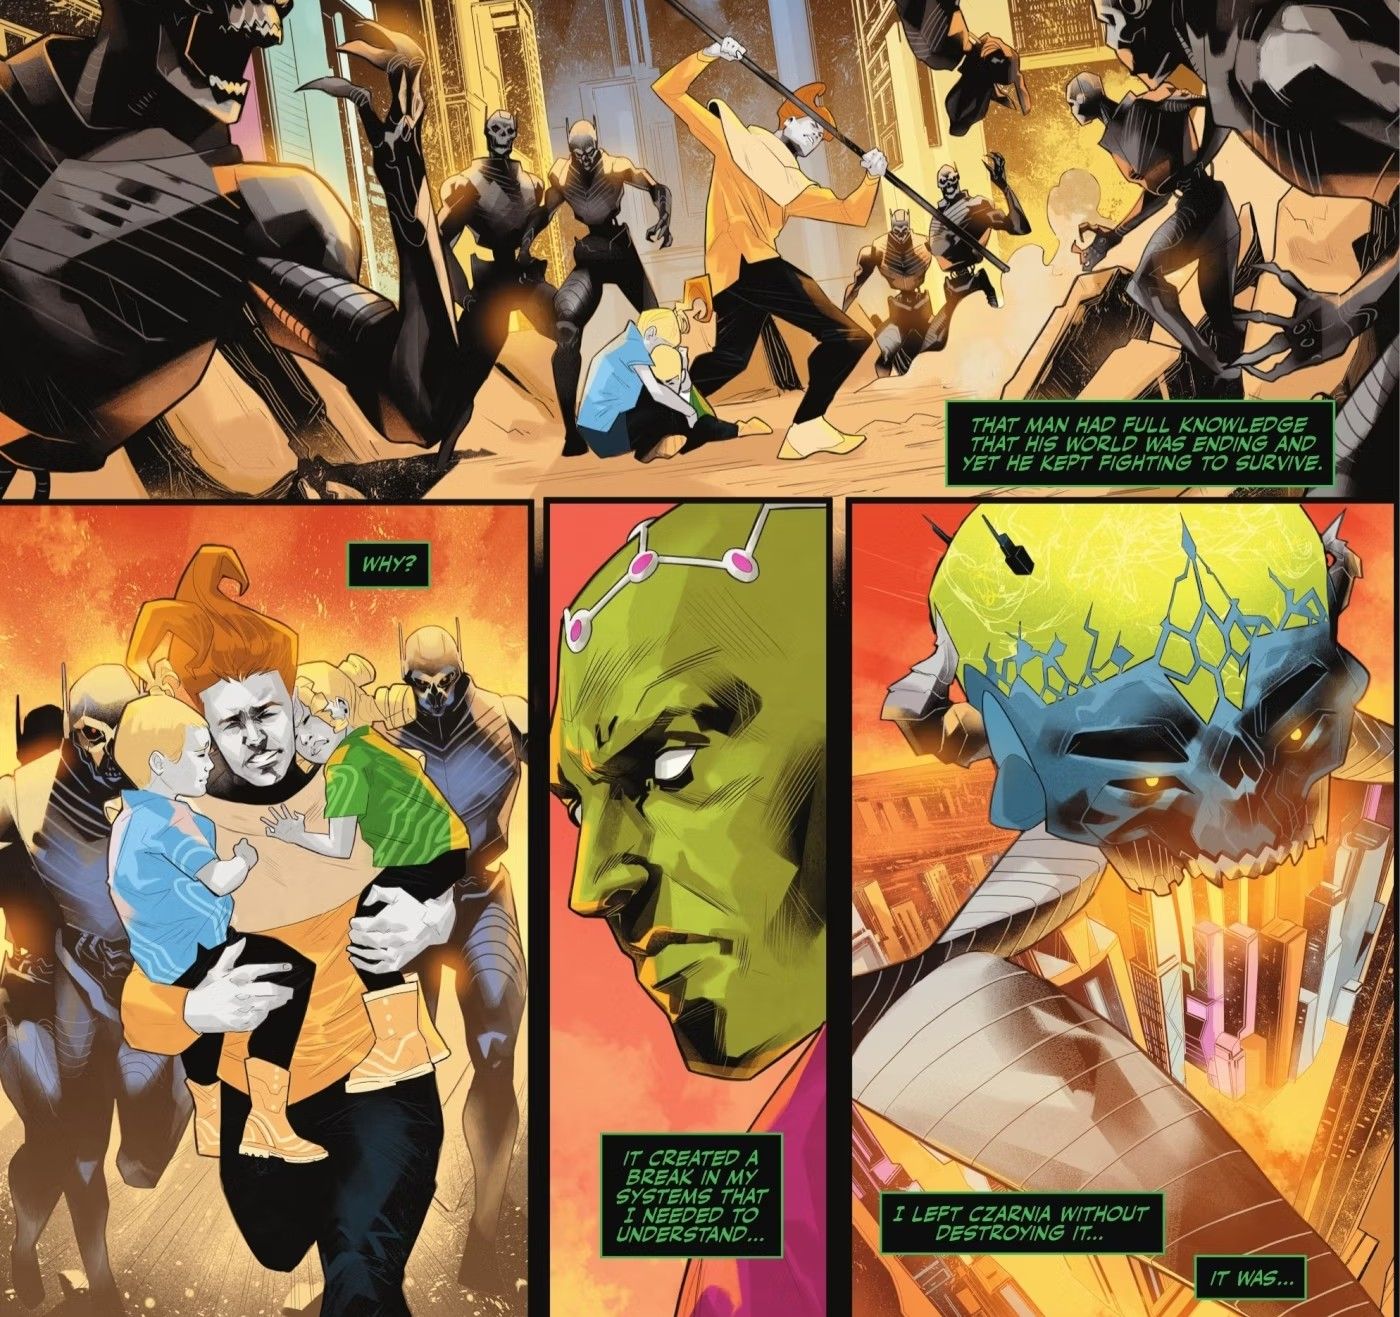 Painéis de quadrinhos: o vilão do Superman, Brainiac, observa um pai tentando salvar seus filhos enquanto seu planeta é destruído.